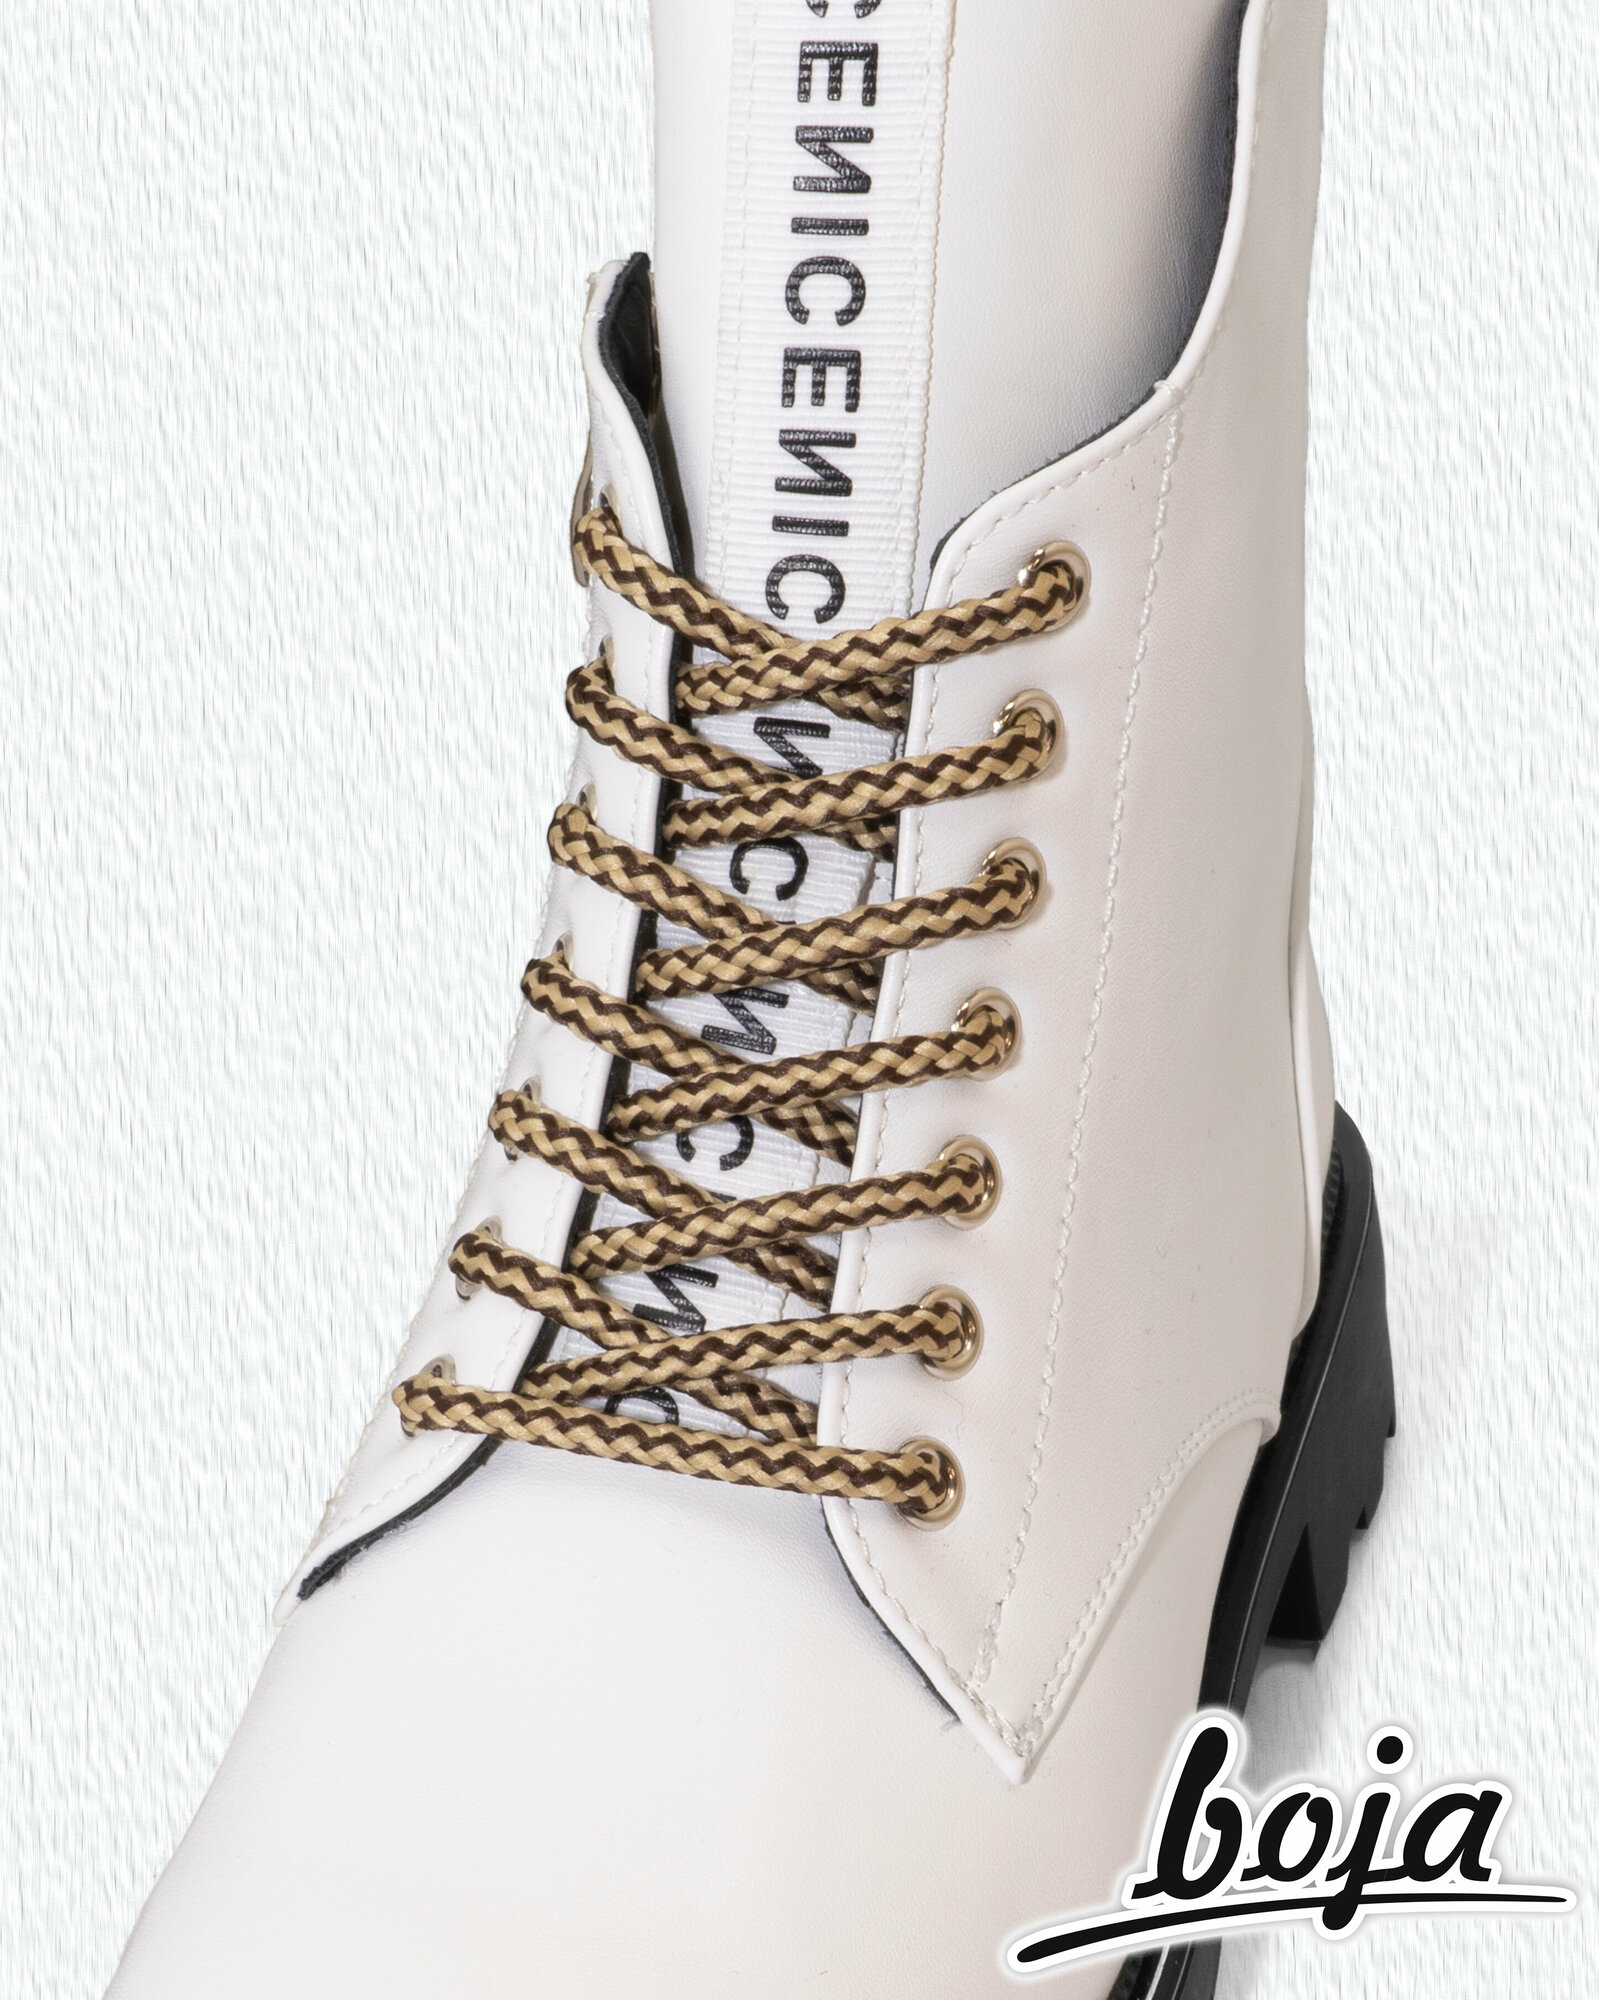 Шнурки для обуви BOJA (ЭФА), круглые, бежевые / коричневые, 150 см, для кроссовок; ботинок; кед; бутсов